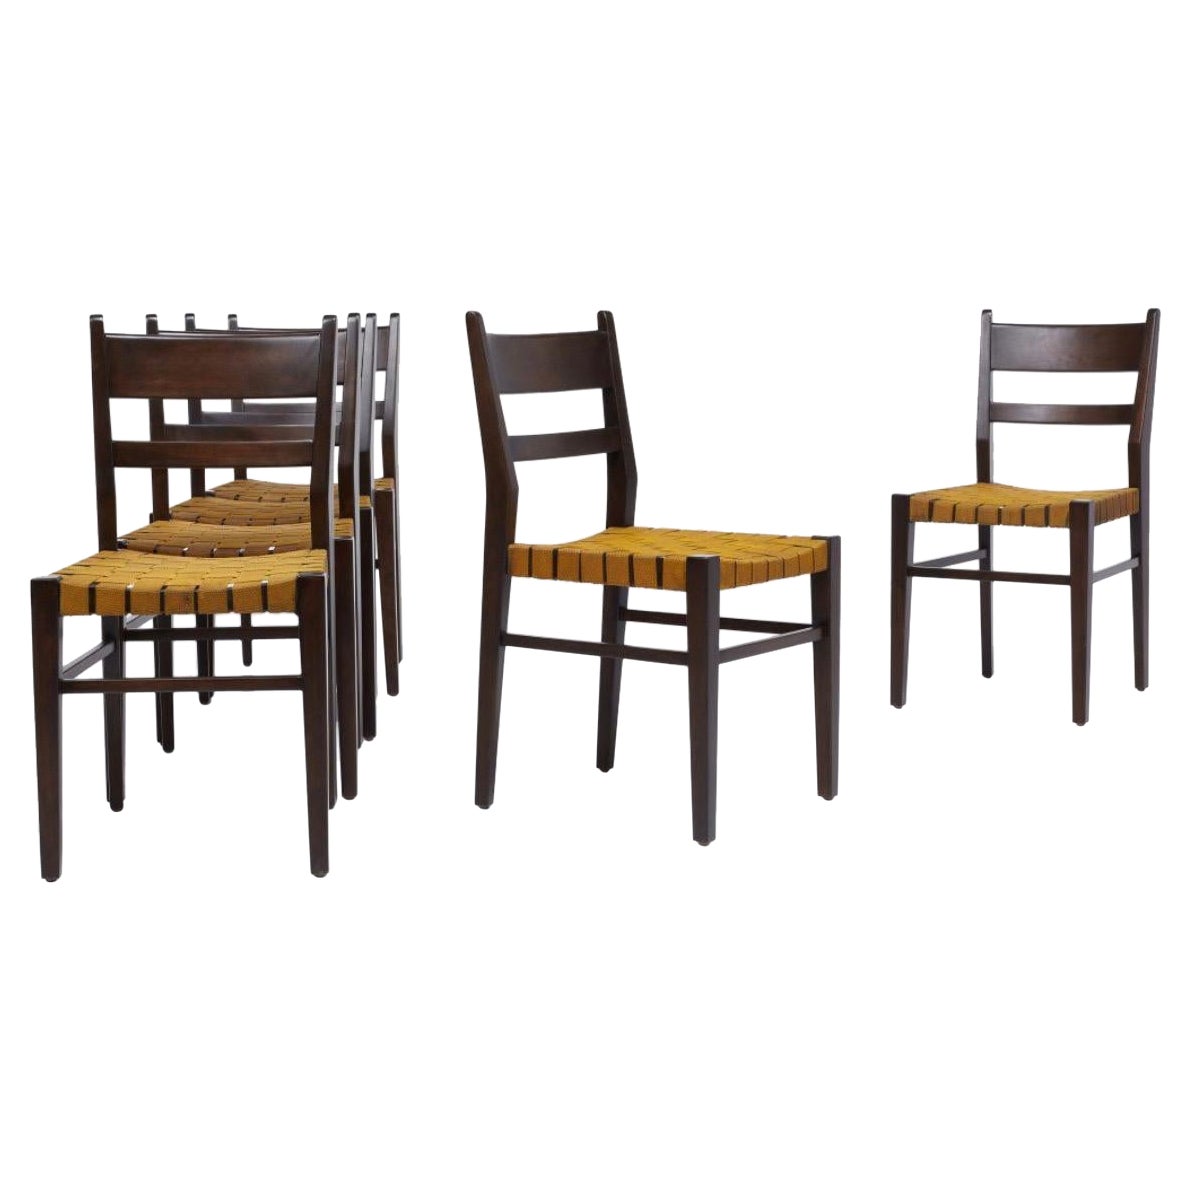 6 chaises de salle à manger en acajou avec sièges tissés attribuées à Edmond Spence, années 1940